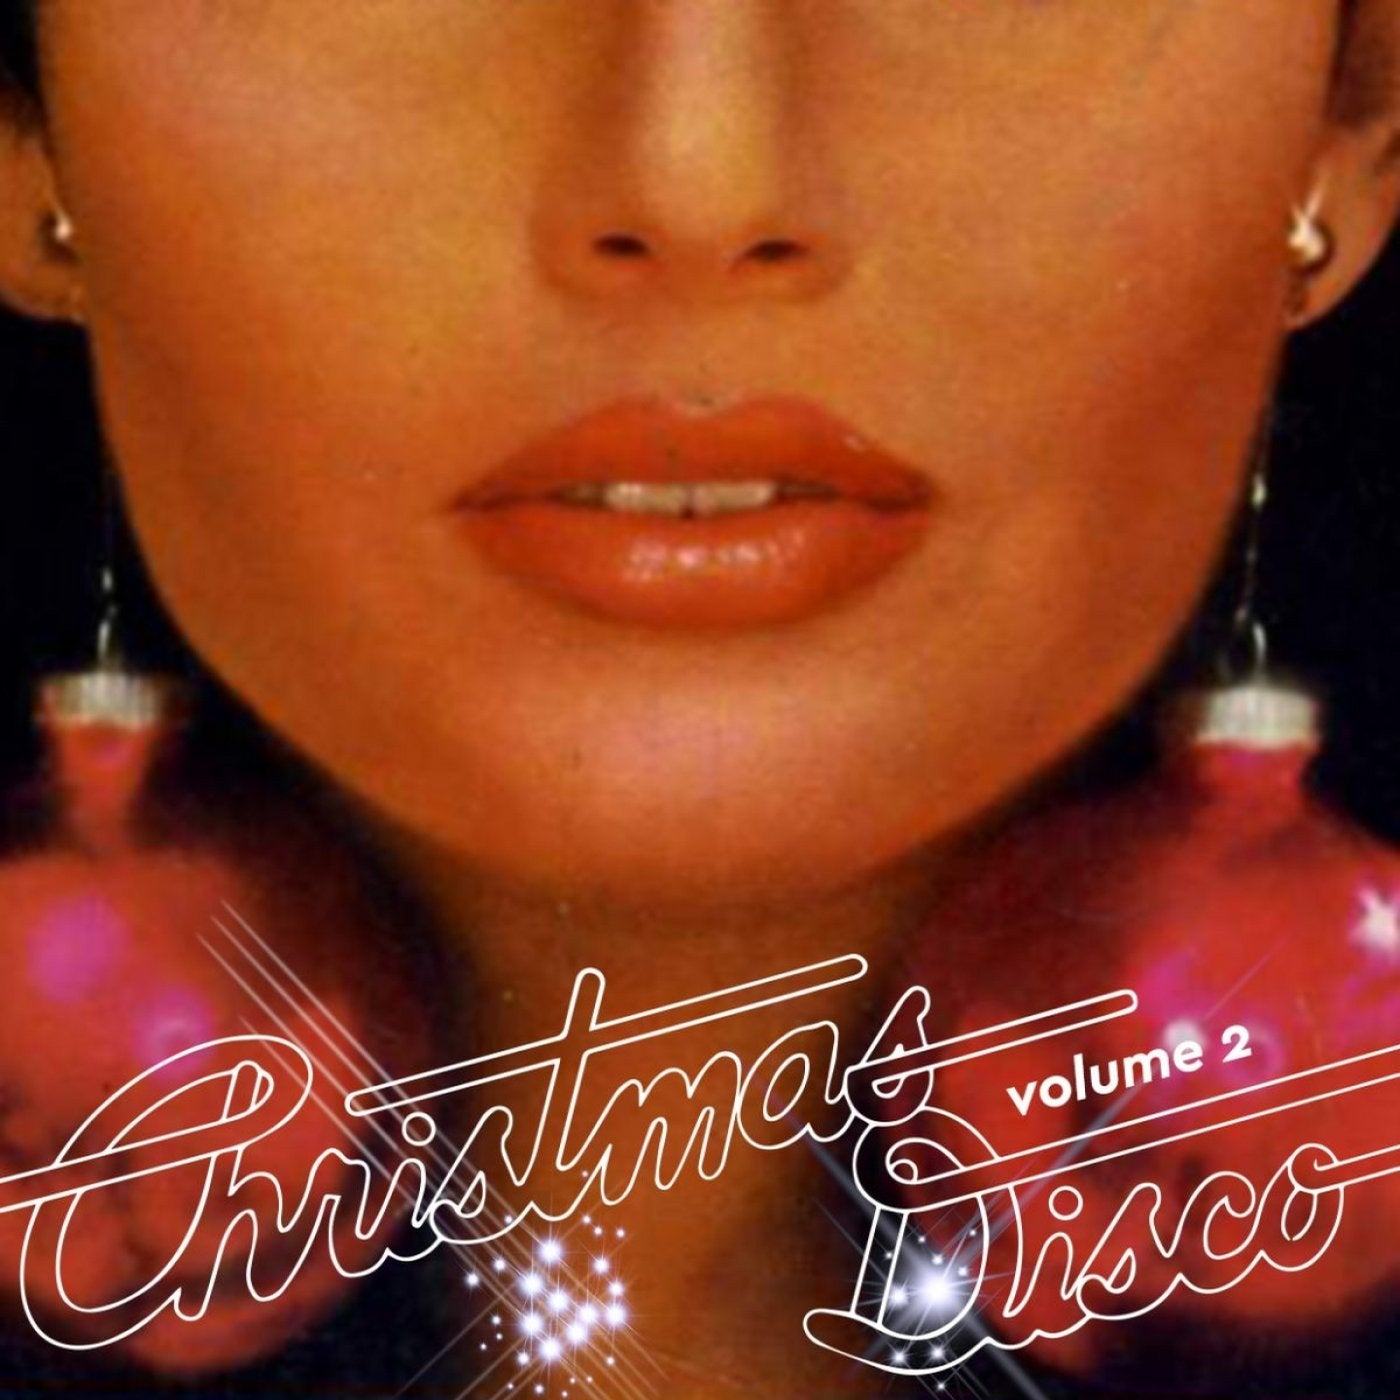 Christmas Disco, Vol. 2